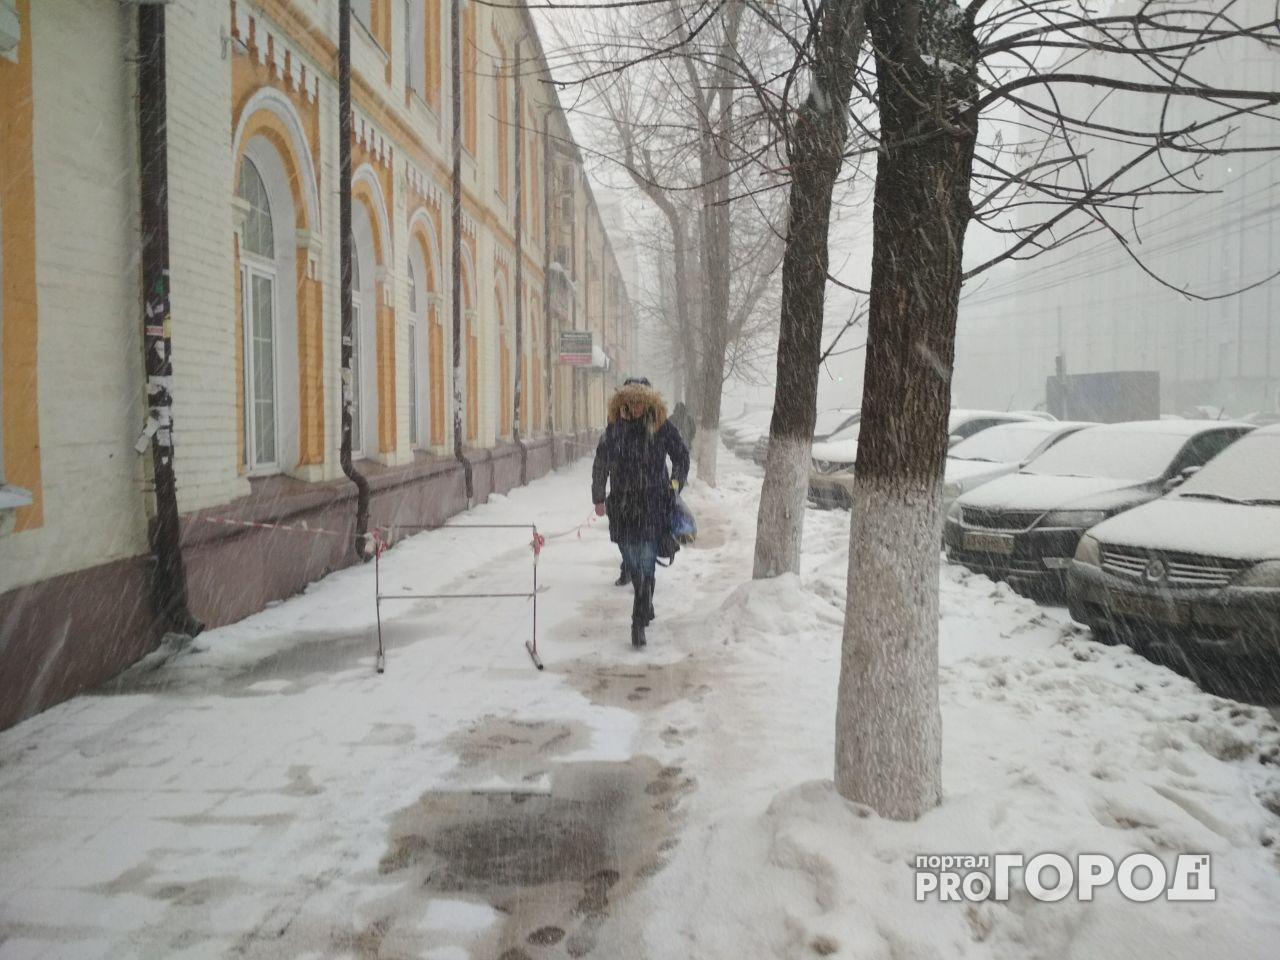 Ждём транспортный коллапс! Фото и видео мартовского снегопада в Ярославле